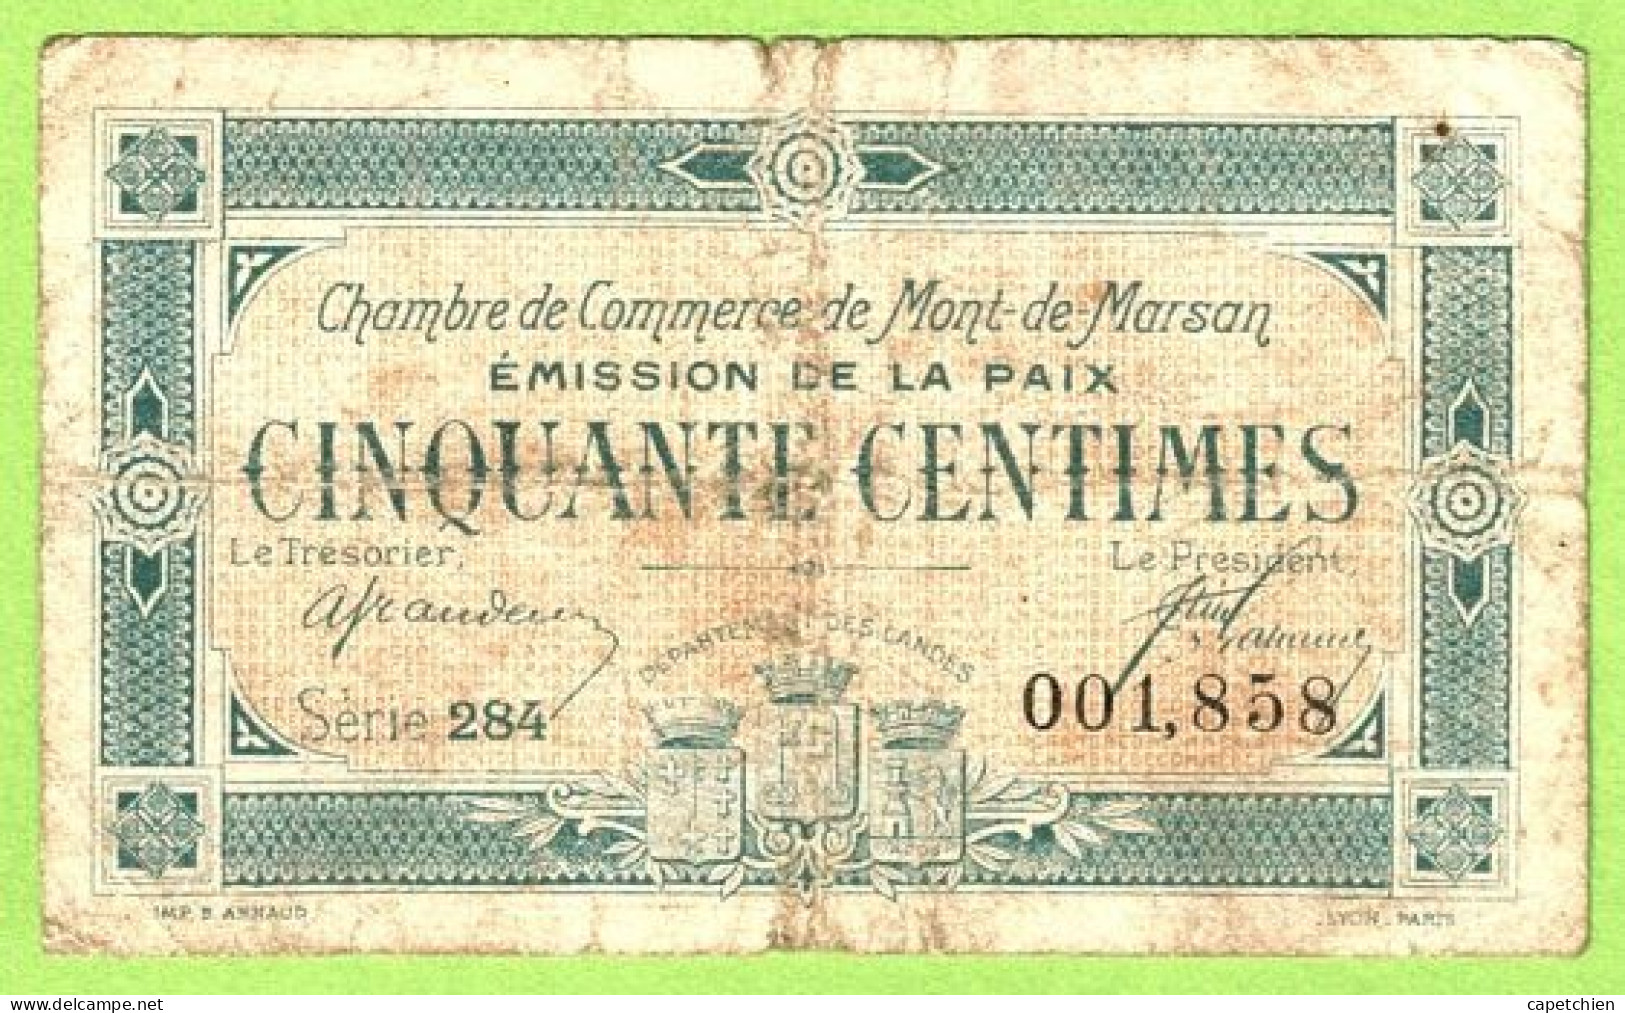 FRANCE / CHAMBRE De COMMERCE / MONT DE MARSAN / 50 CENTIMES / 1921 / EMISSION DE LA PAIX 001858 / SERIE 284 - Handelskammer